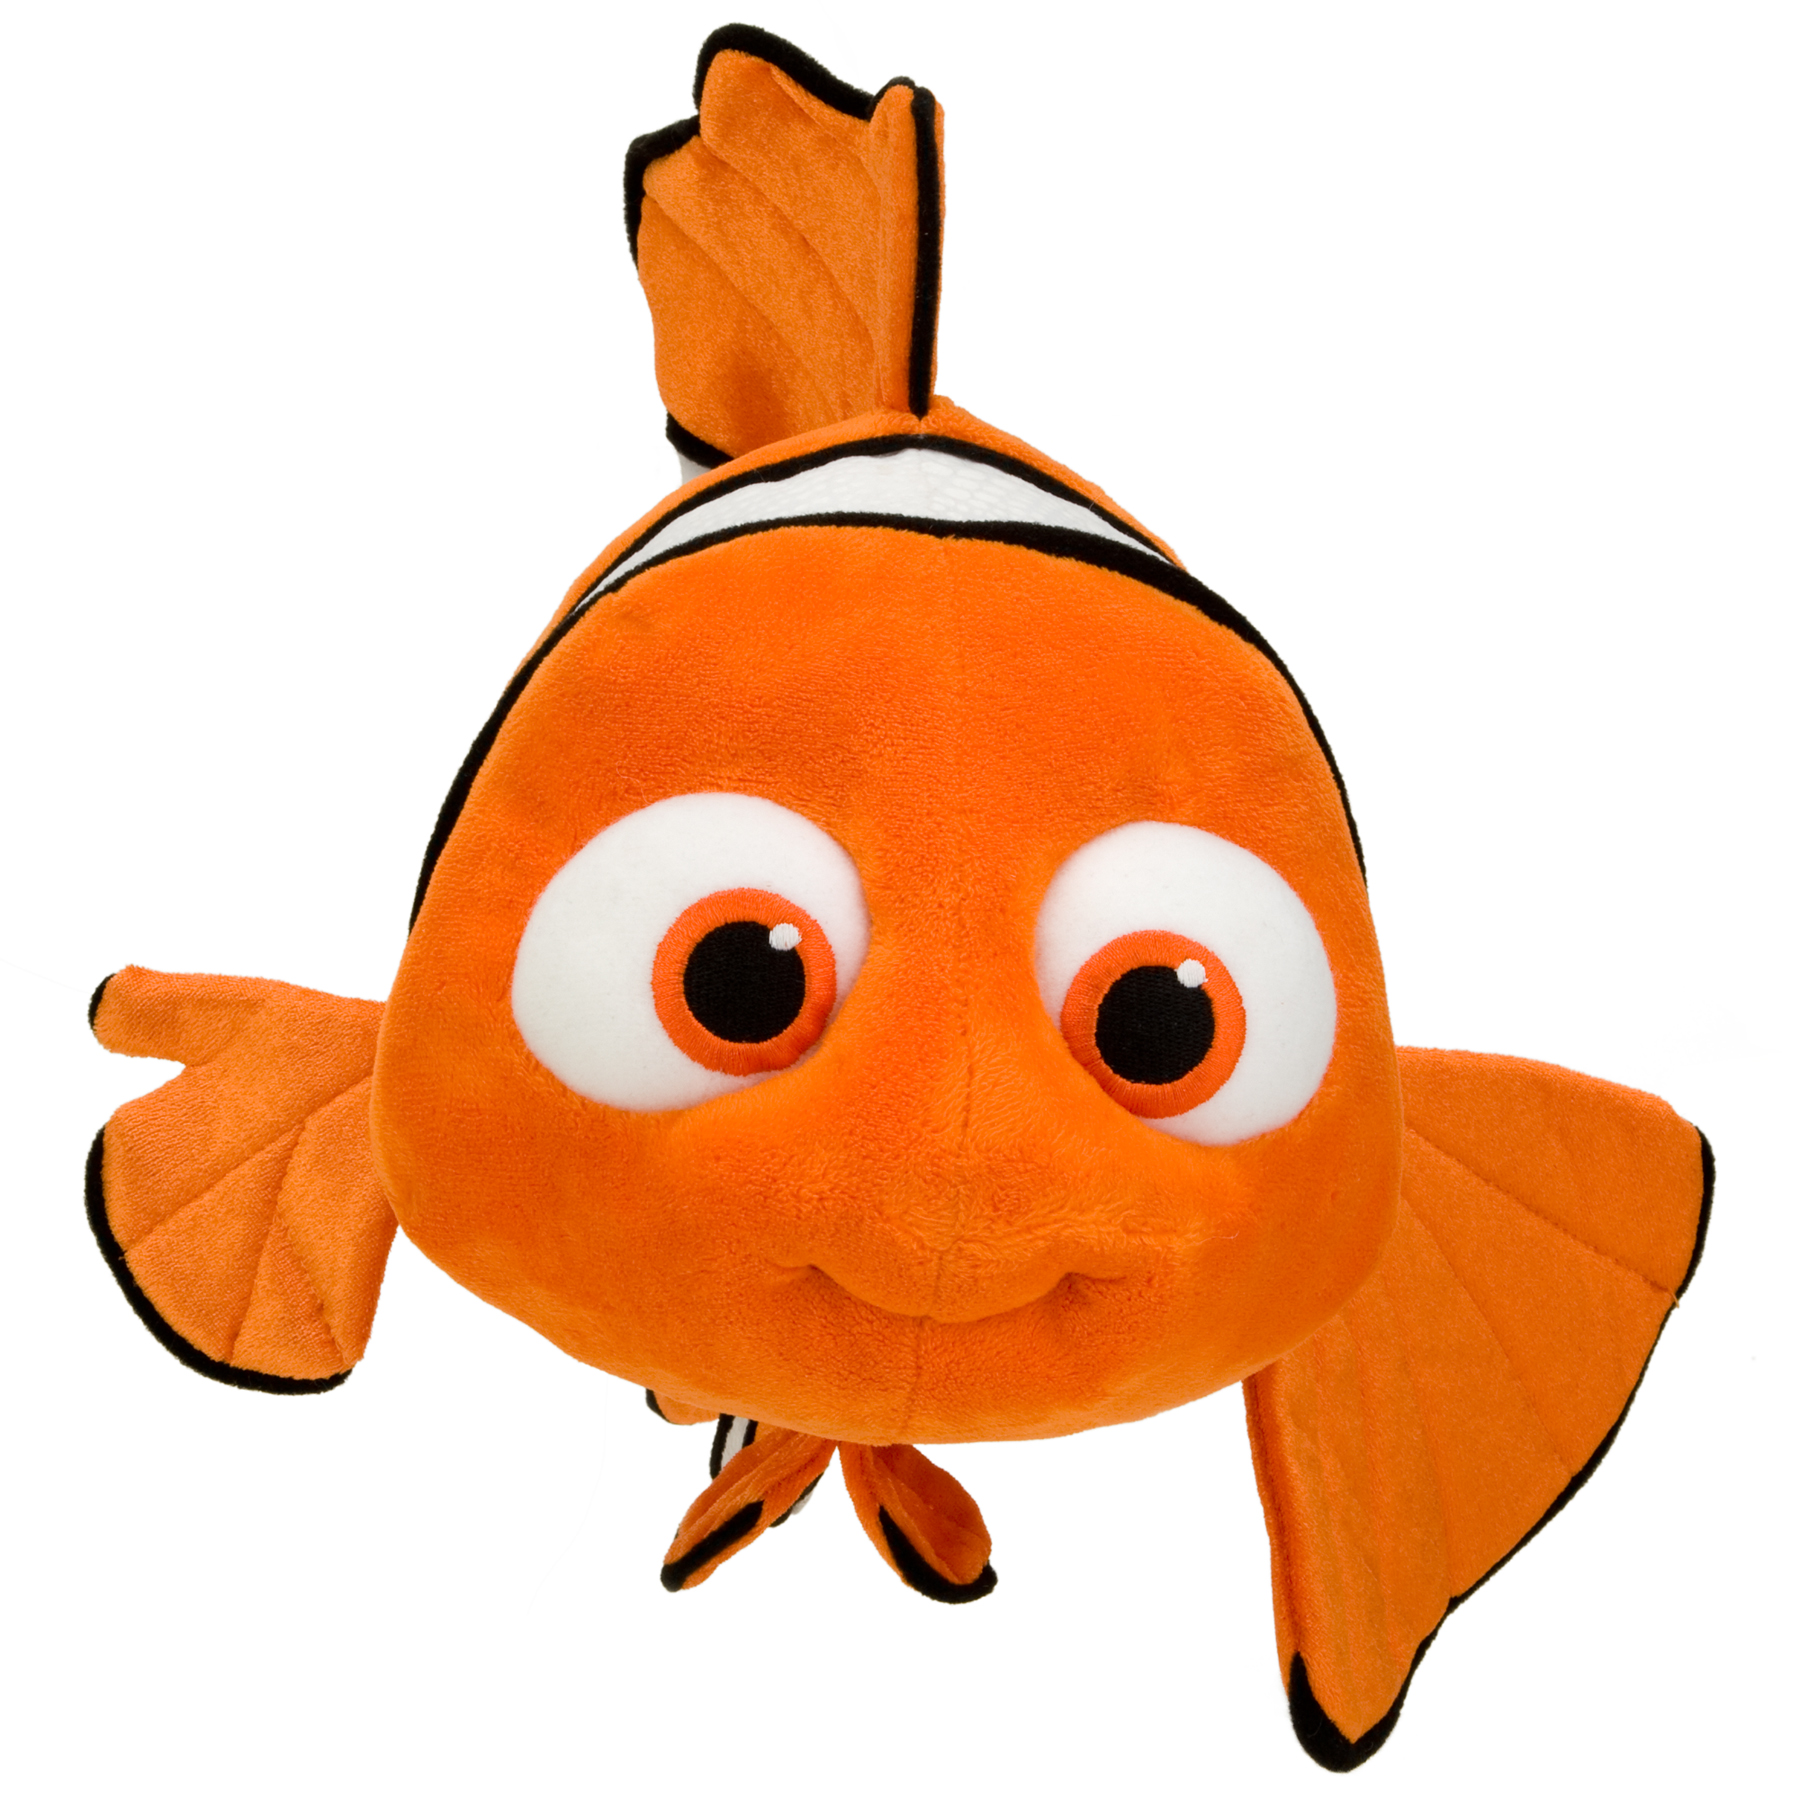 Baby Nemo Clipart